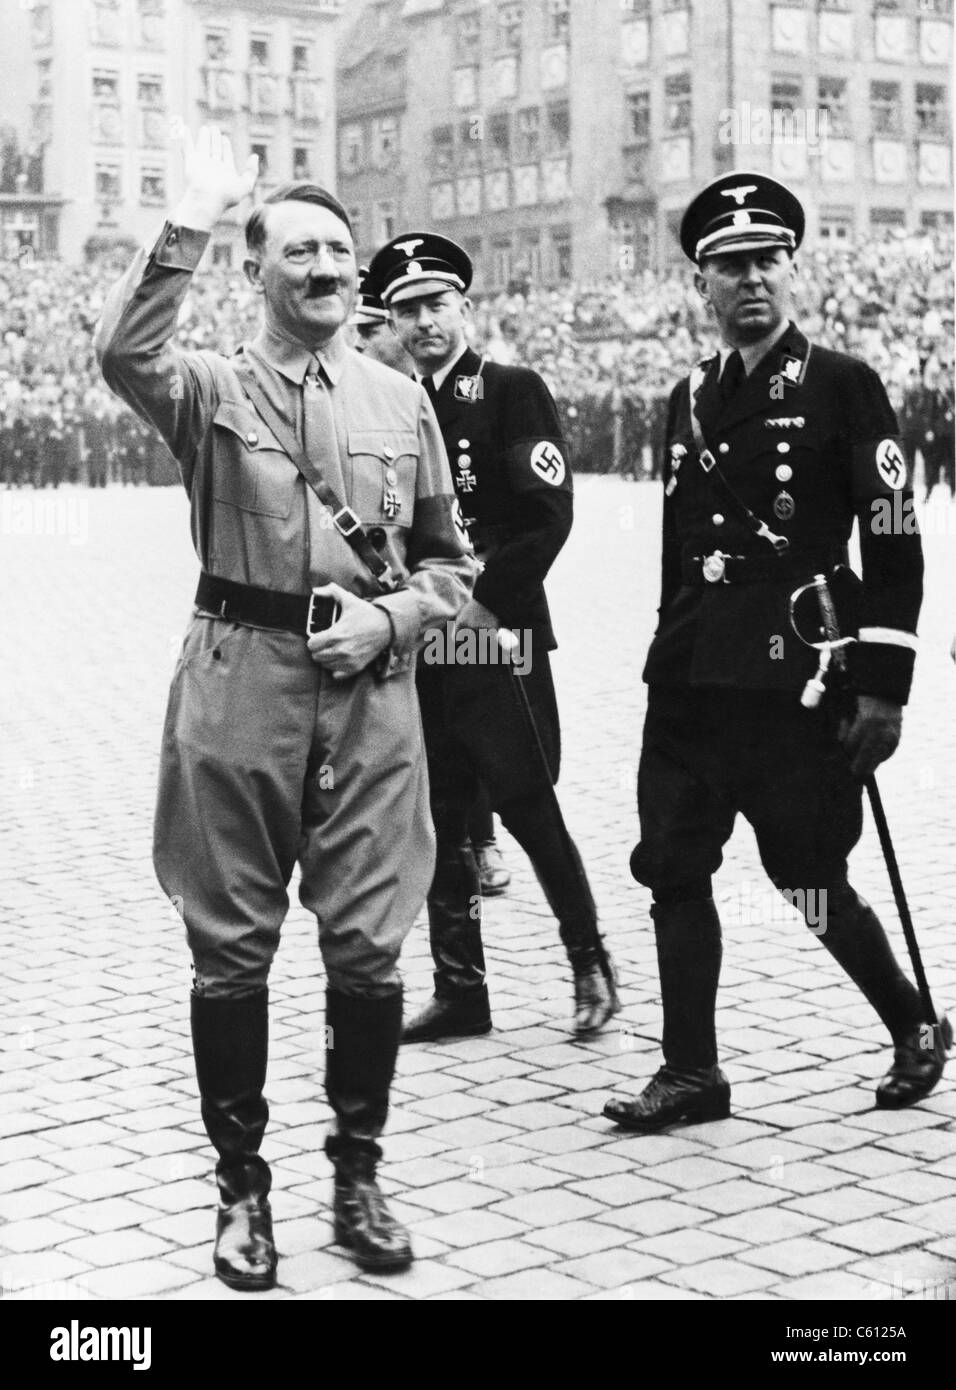 Adolf Hitler salutieren, mit zwei SS-Generäle in Uniform hinter ihm, am Tag der Nazi-Partei, Nürnberg, Deutschland. 1937. Stockfoto